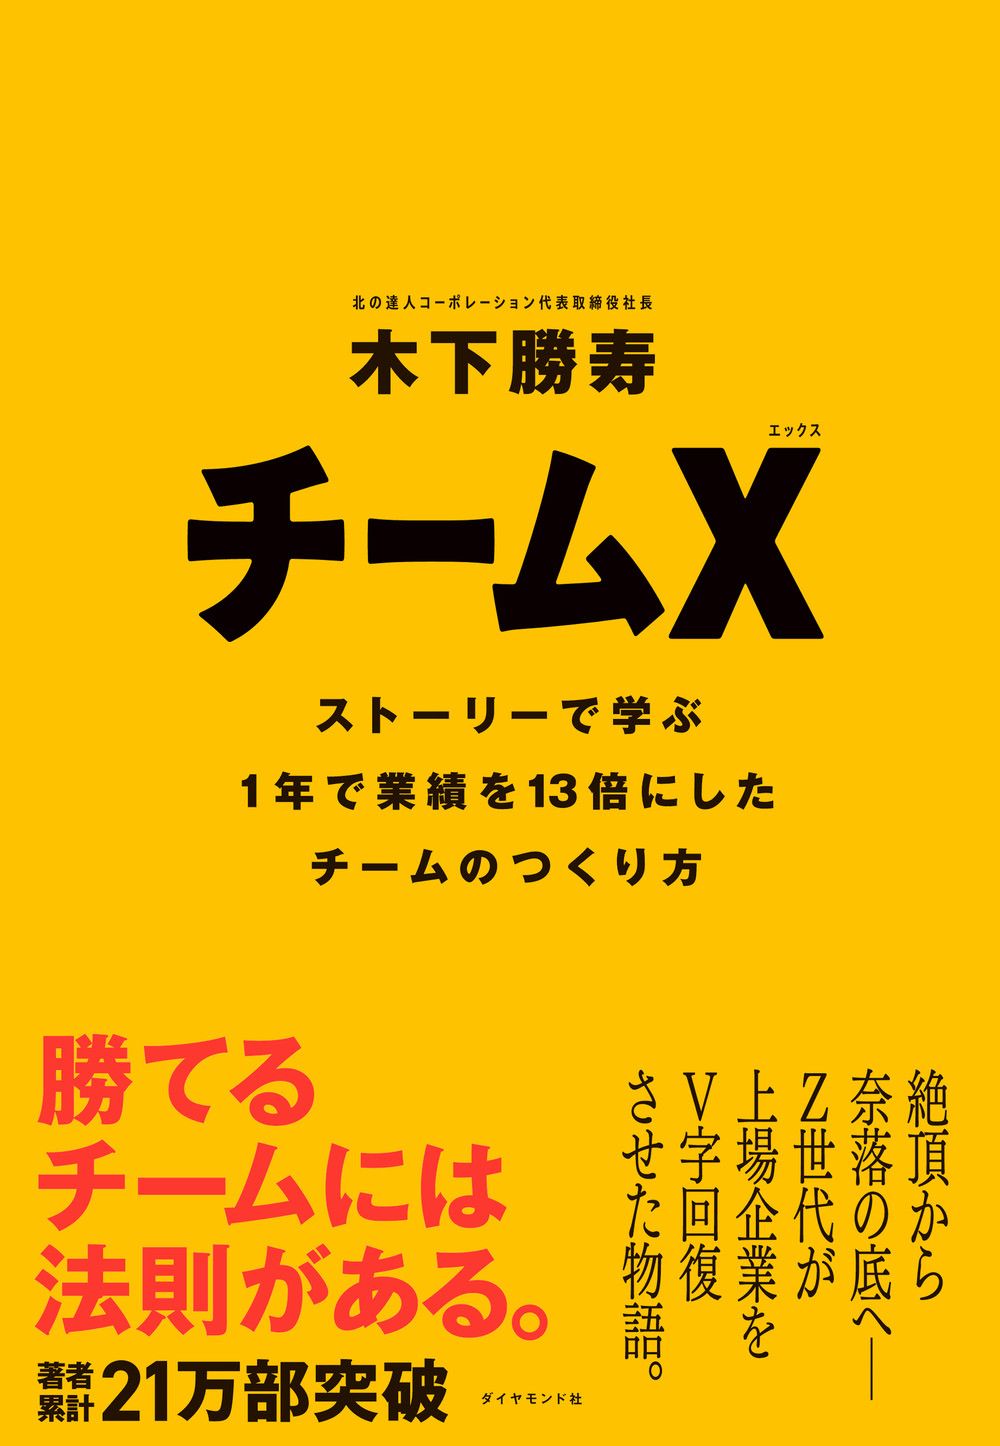 木下 勝寿『チームX(エックス) ── ストーリーで学ぶ１年で業績を13倍にしたチームのつくり方』（ダイヤモンド社）